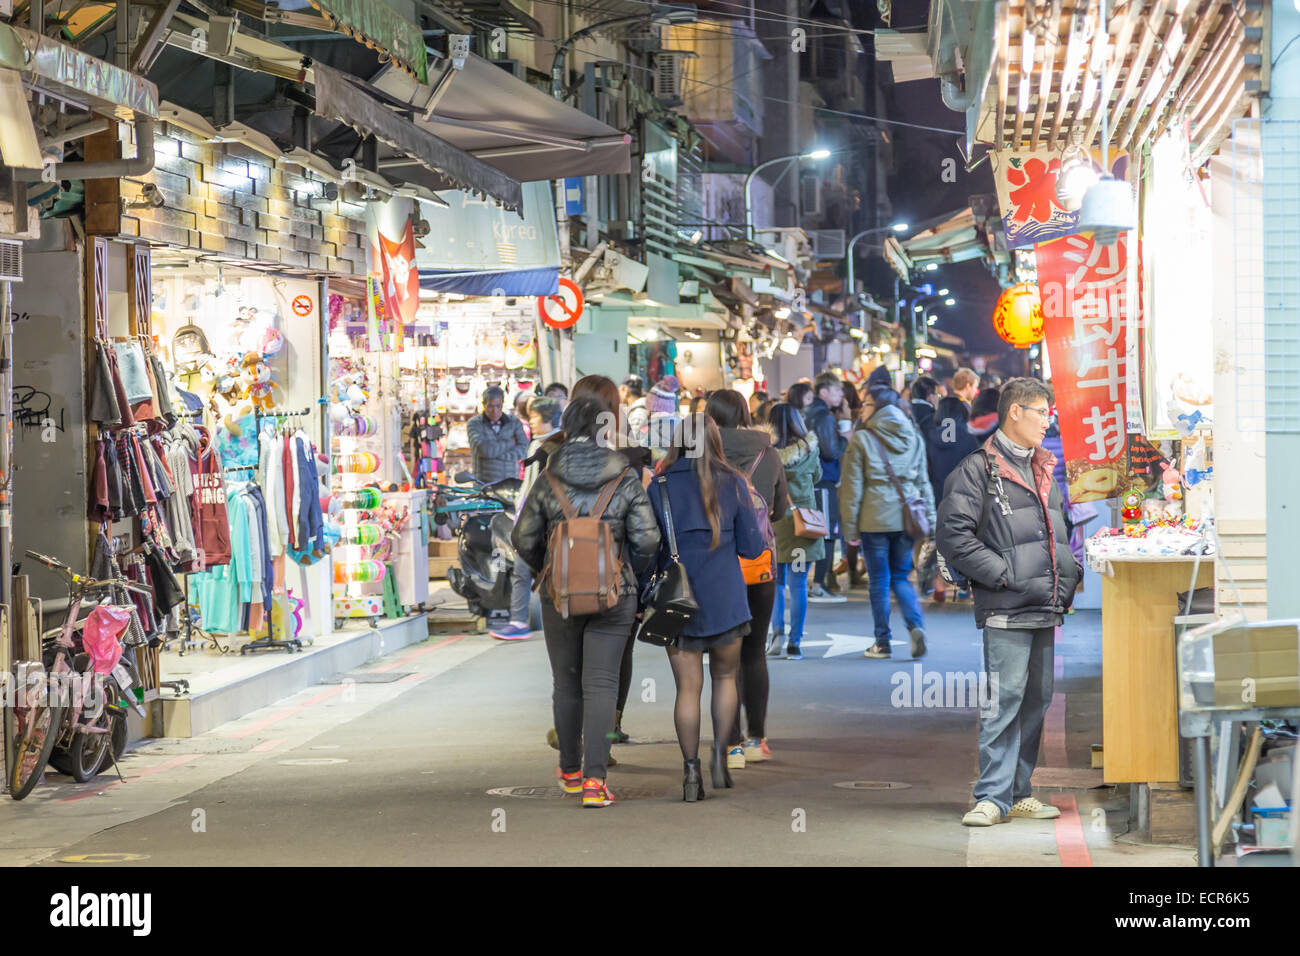 TAIPEI CITY, TAIPEI, TAIWAN. DECEMBER 17, 2014.  People walking through Shida night market in Taipei City Stock Photo